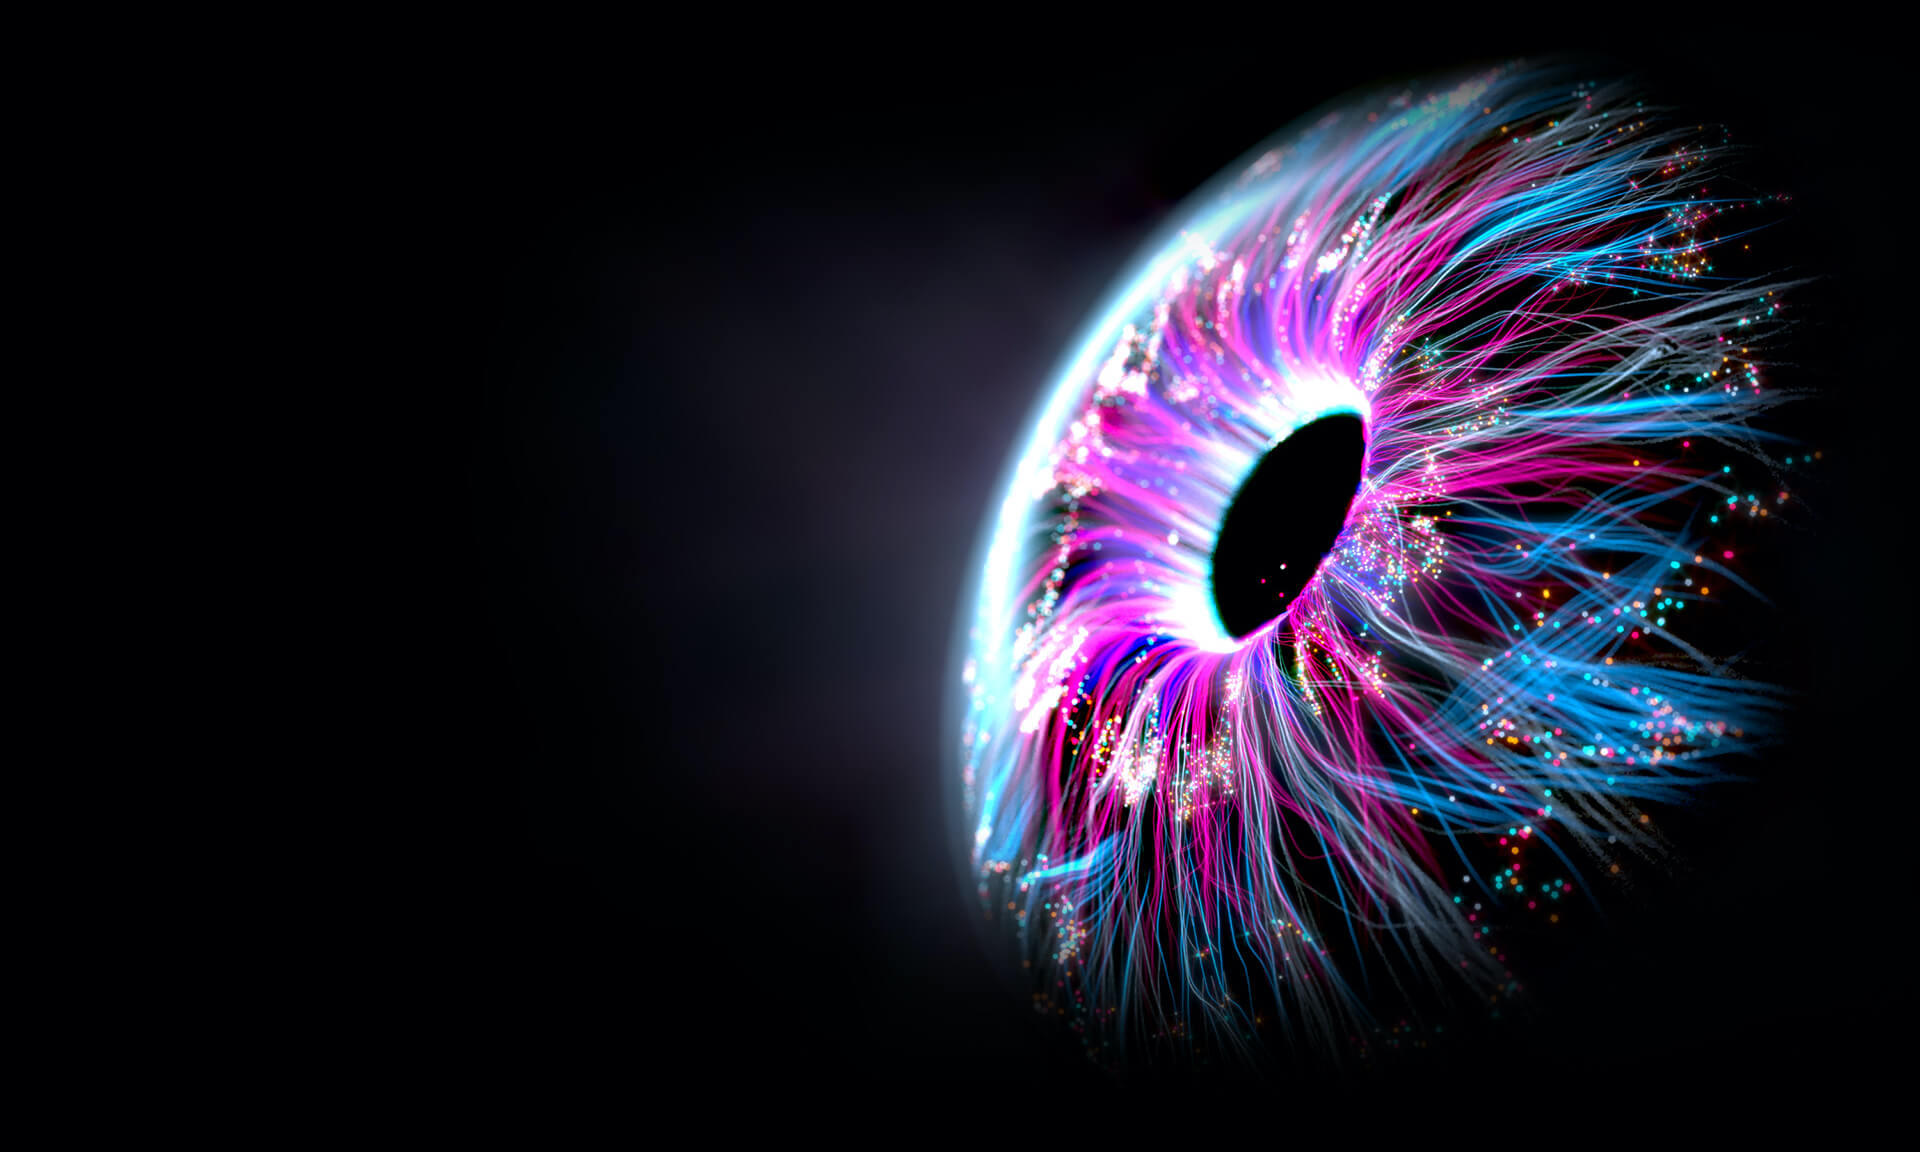 Изображение человеческого глаза крупным планом с выходящими из него потоками синего и фиолетового света